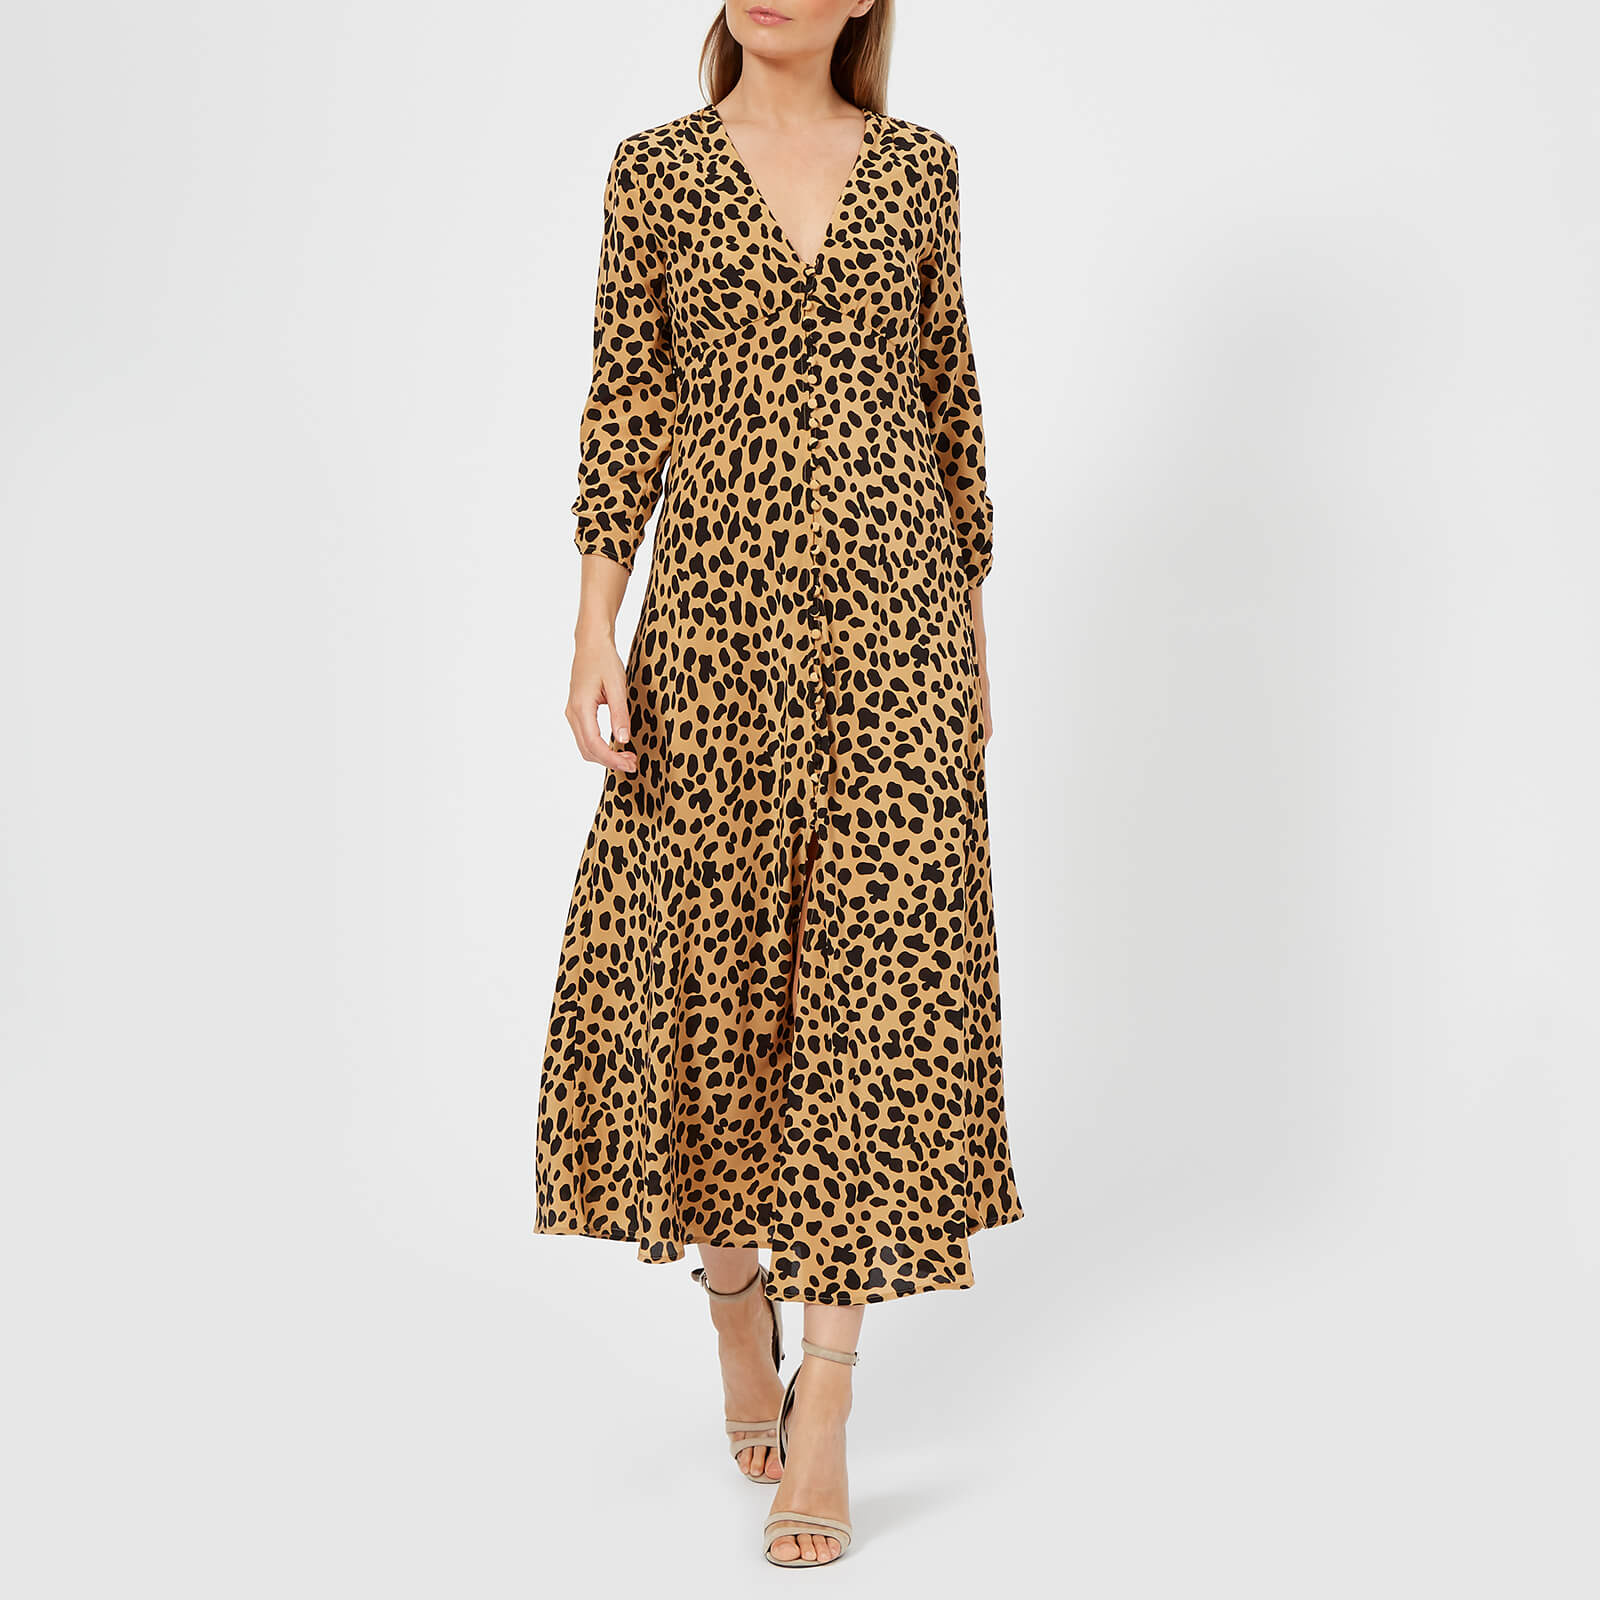 rixo katie dress leopard